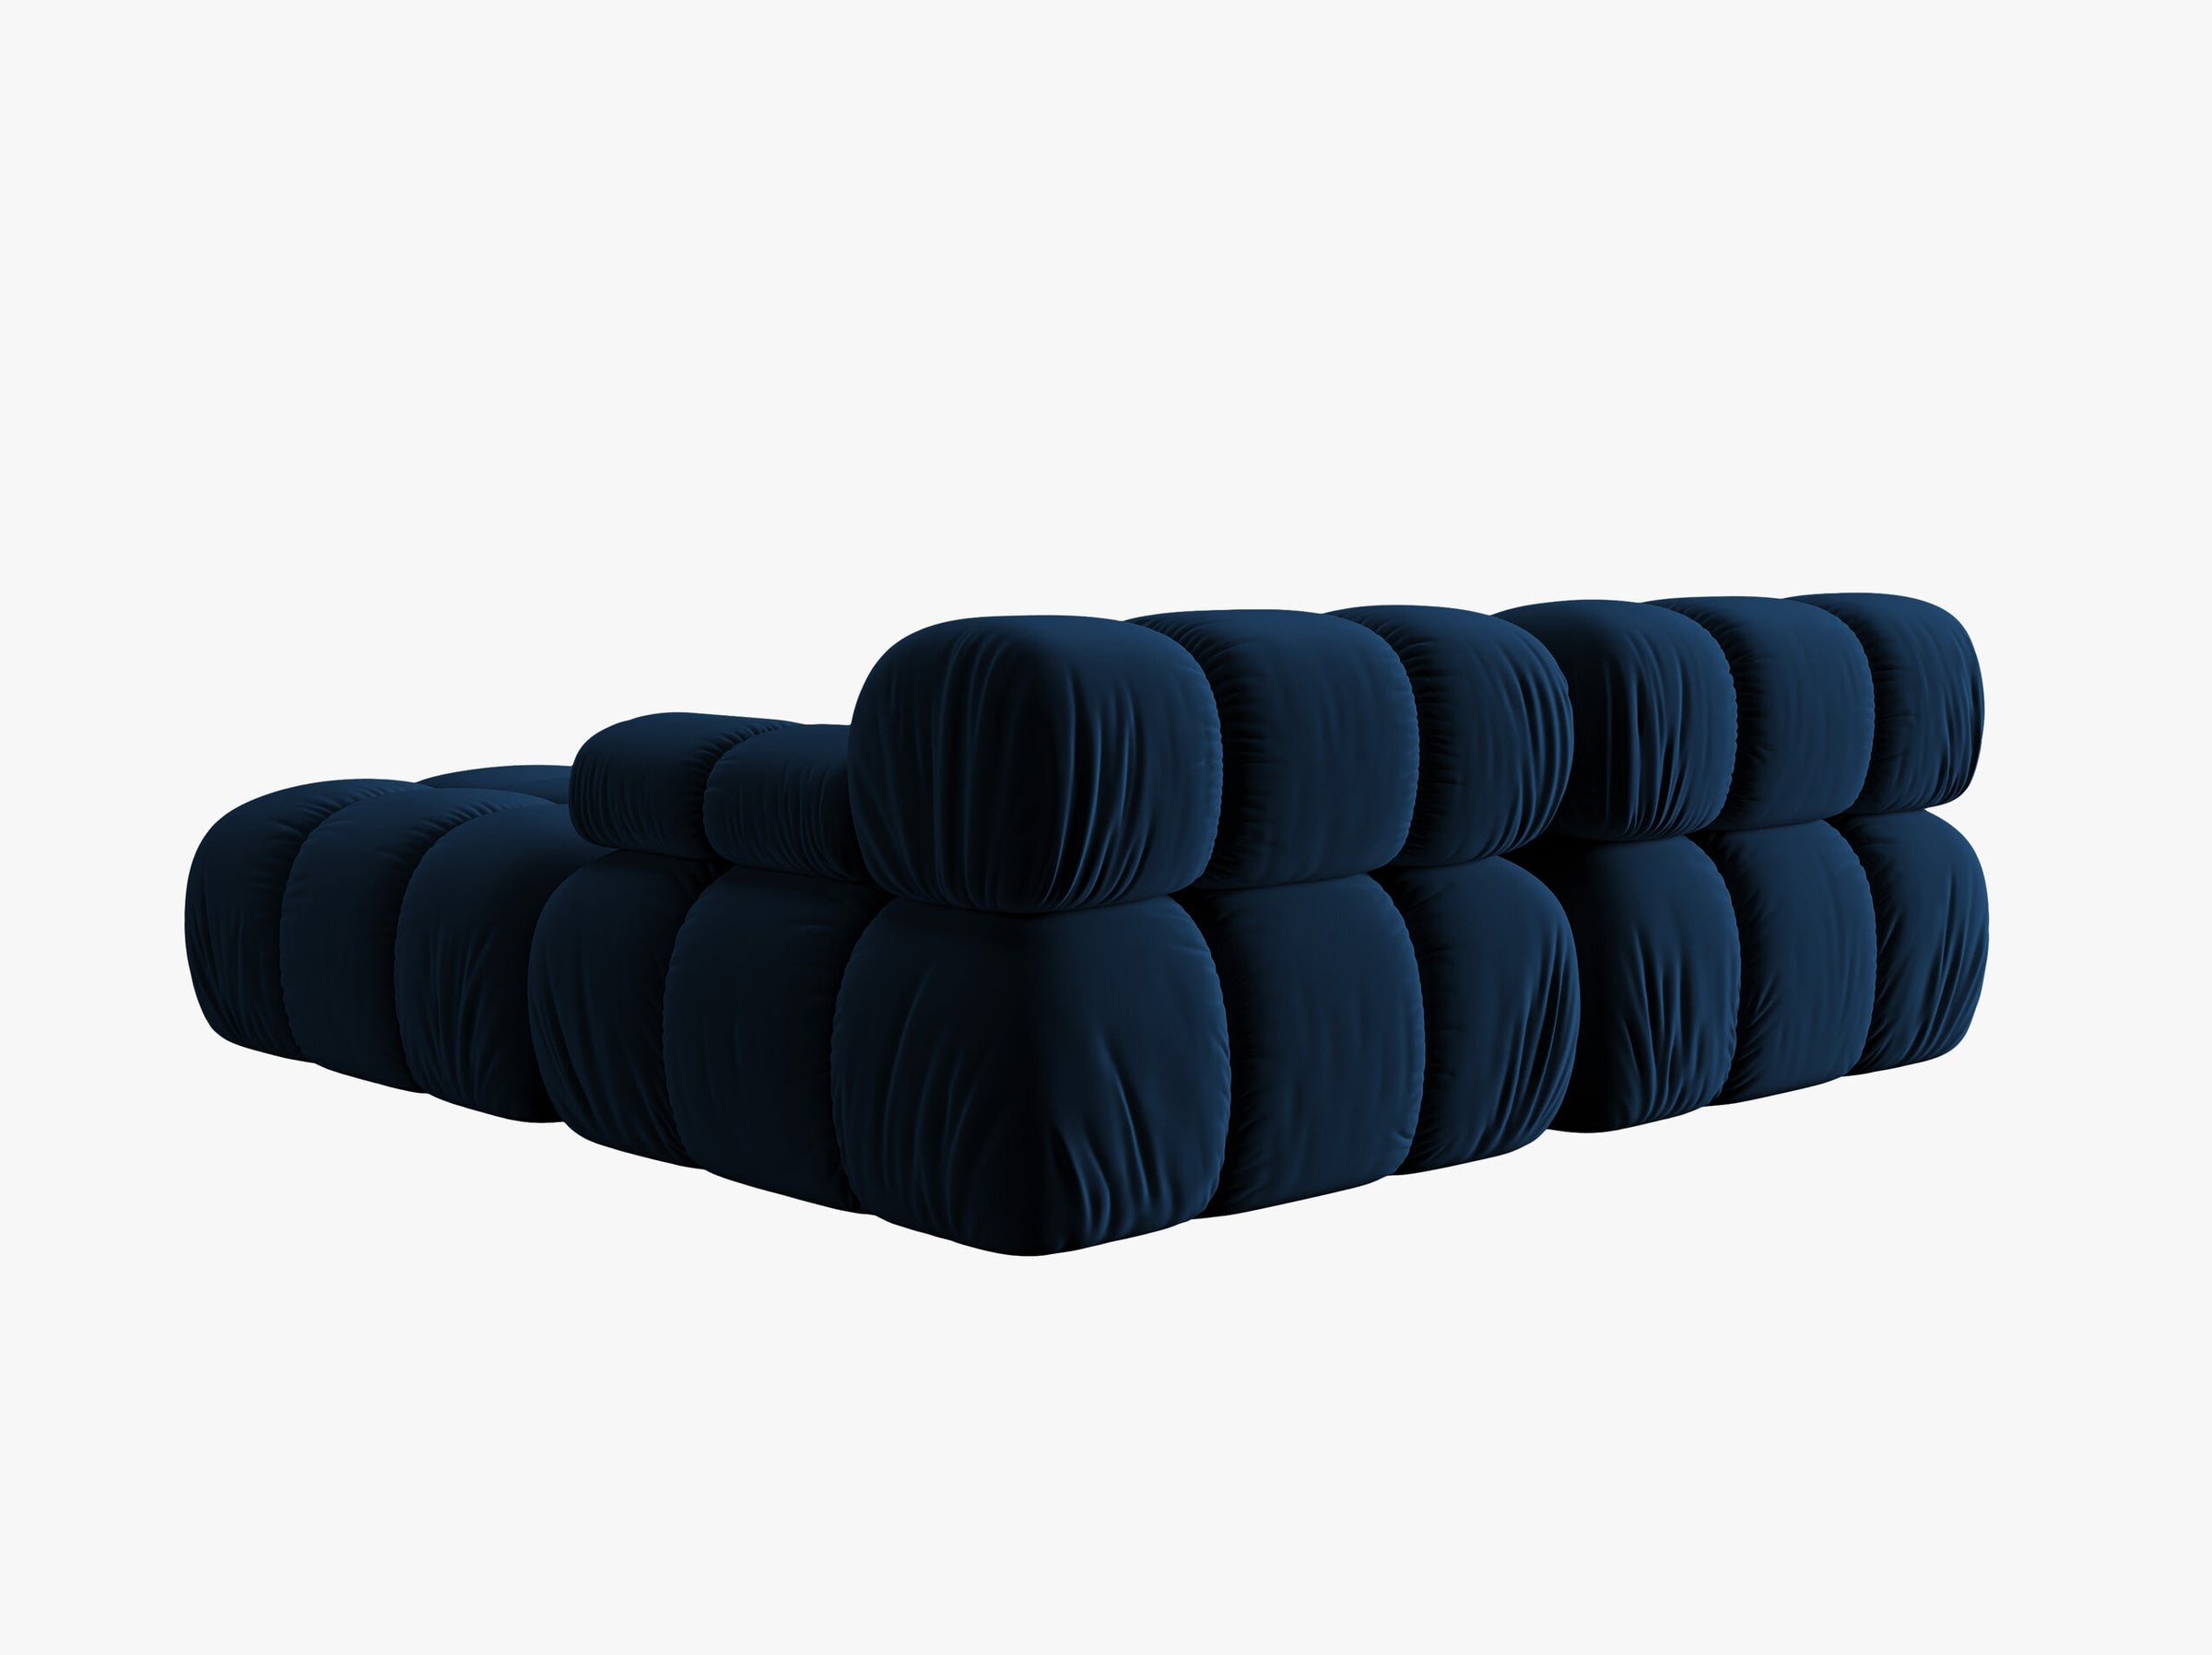 Bellis sofas velvet royal blue